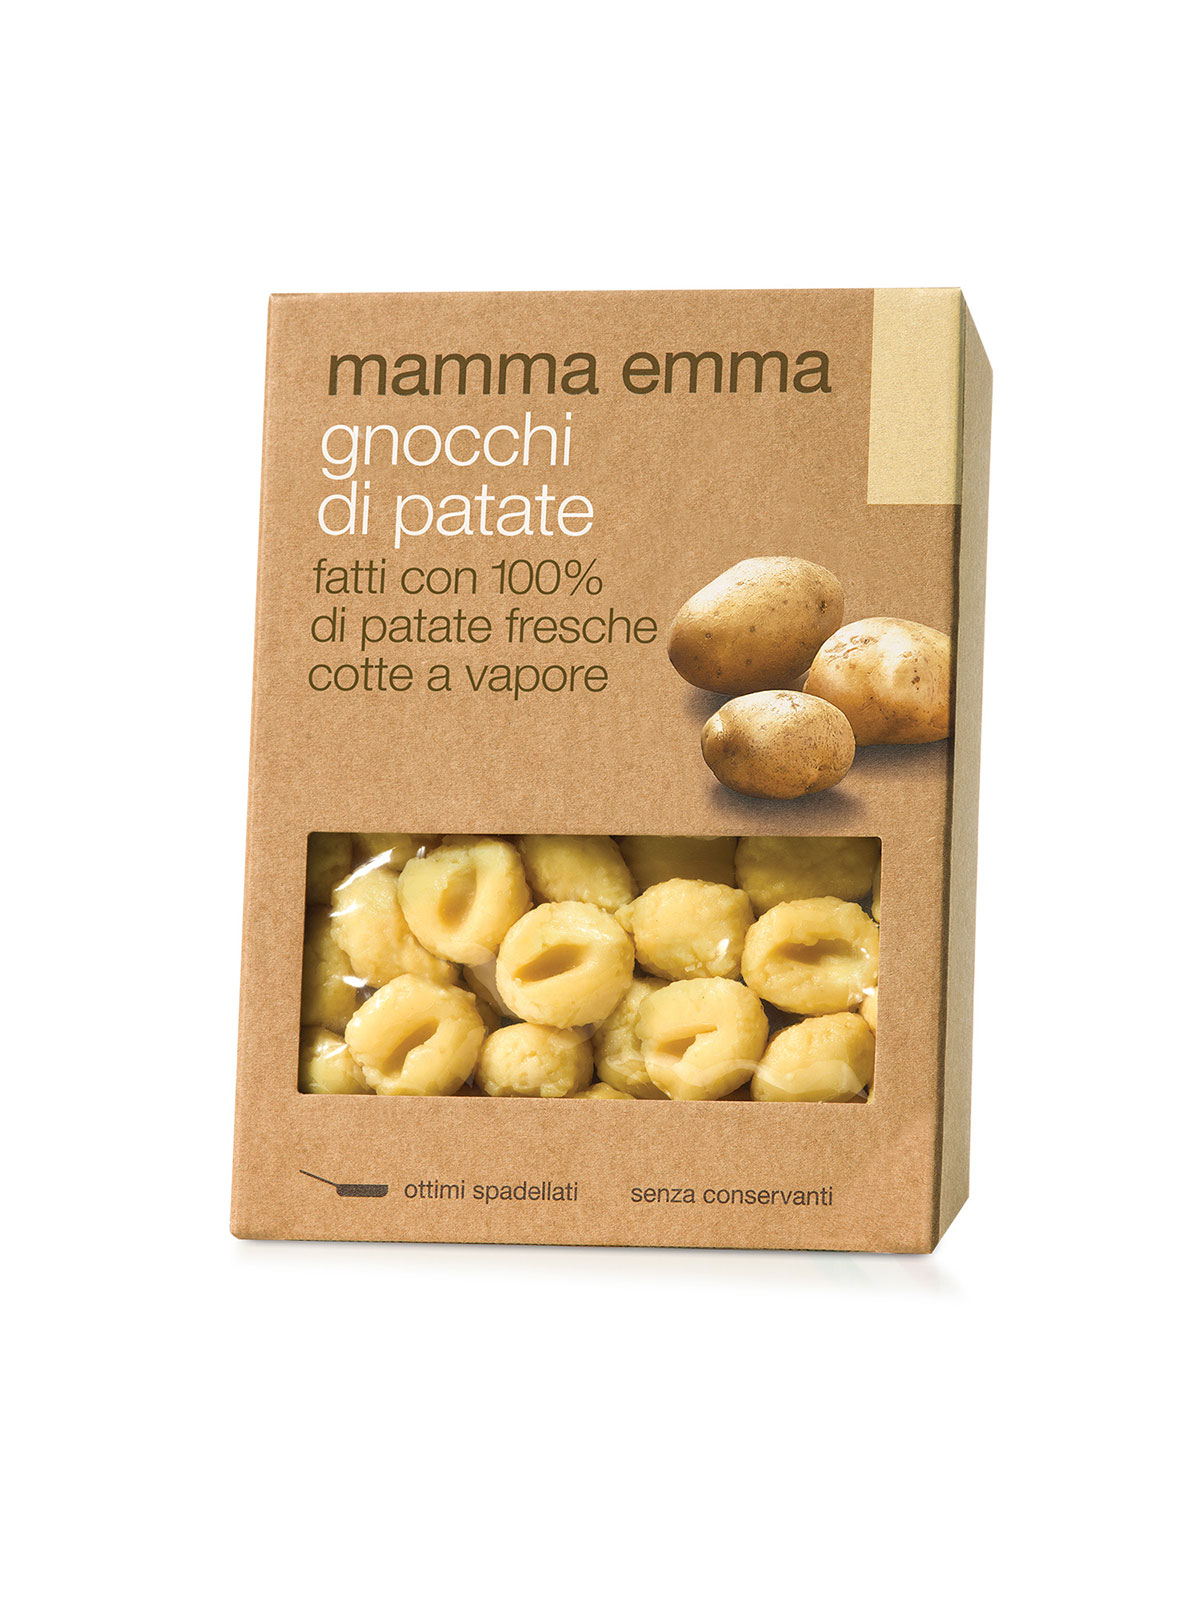 Mamma Emma Potato Gnocchi - Pastas, Rice, and Grains - Buon'Italia